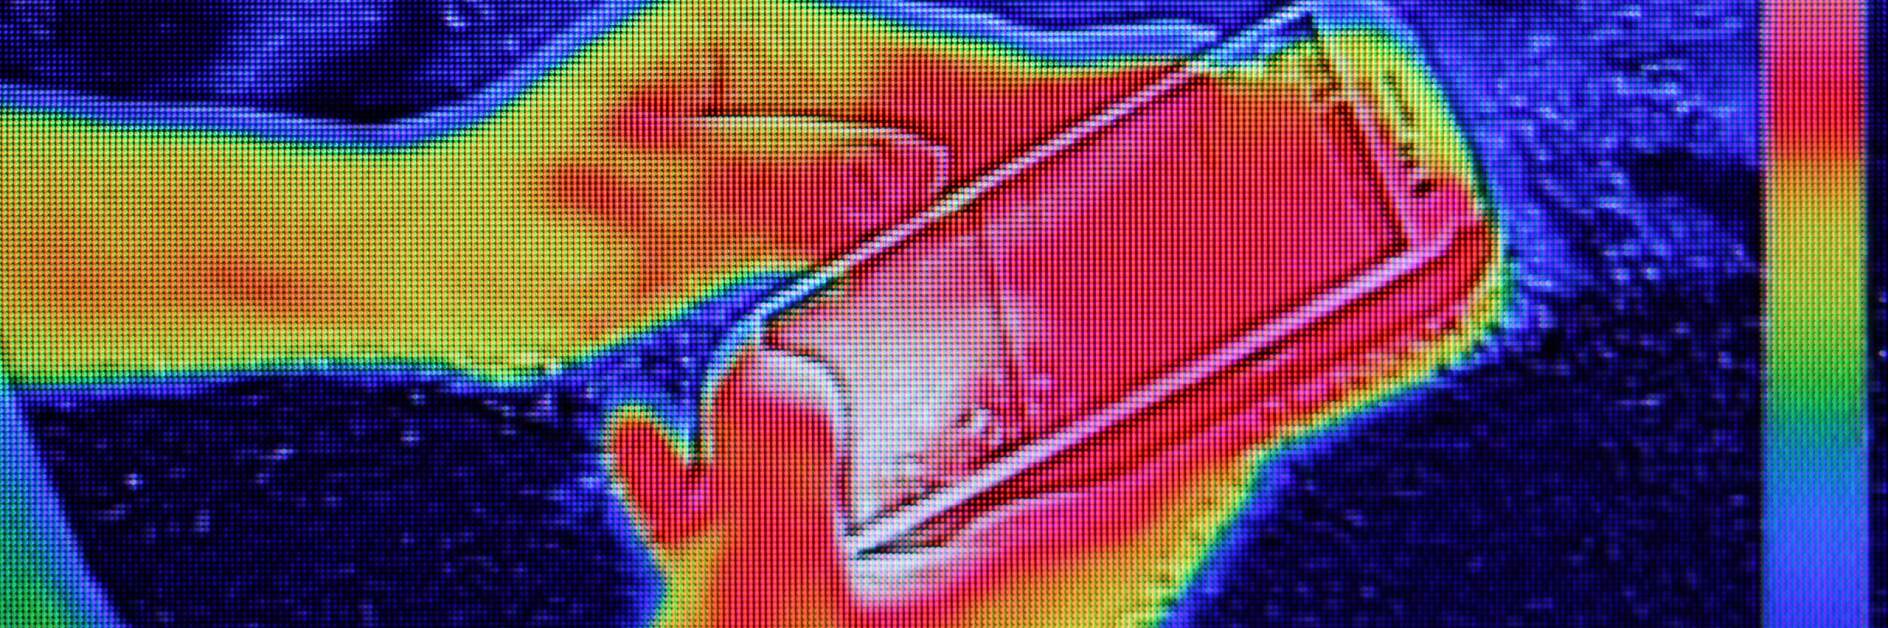 Obraz w podczerwieni pokazujący emisję ciepła, gdy młoda dziewczyna używała smartfona